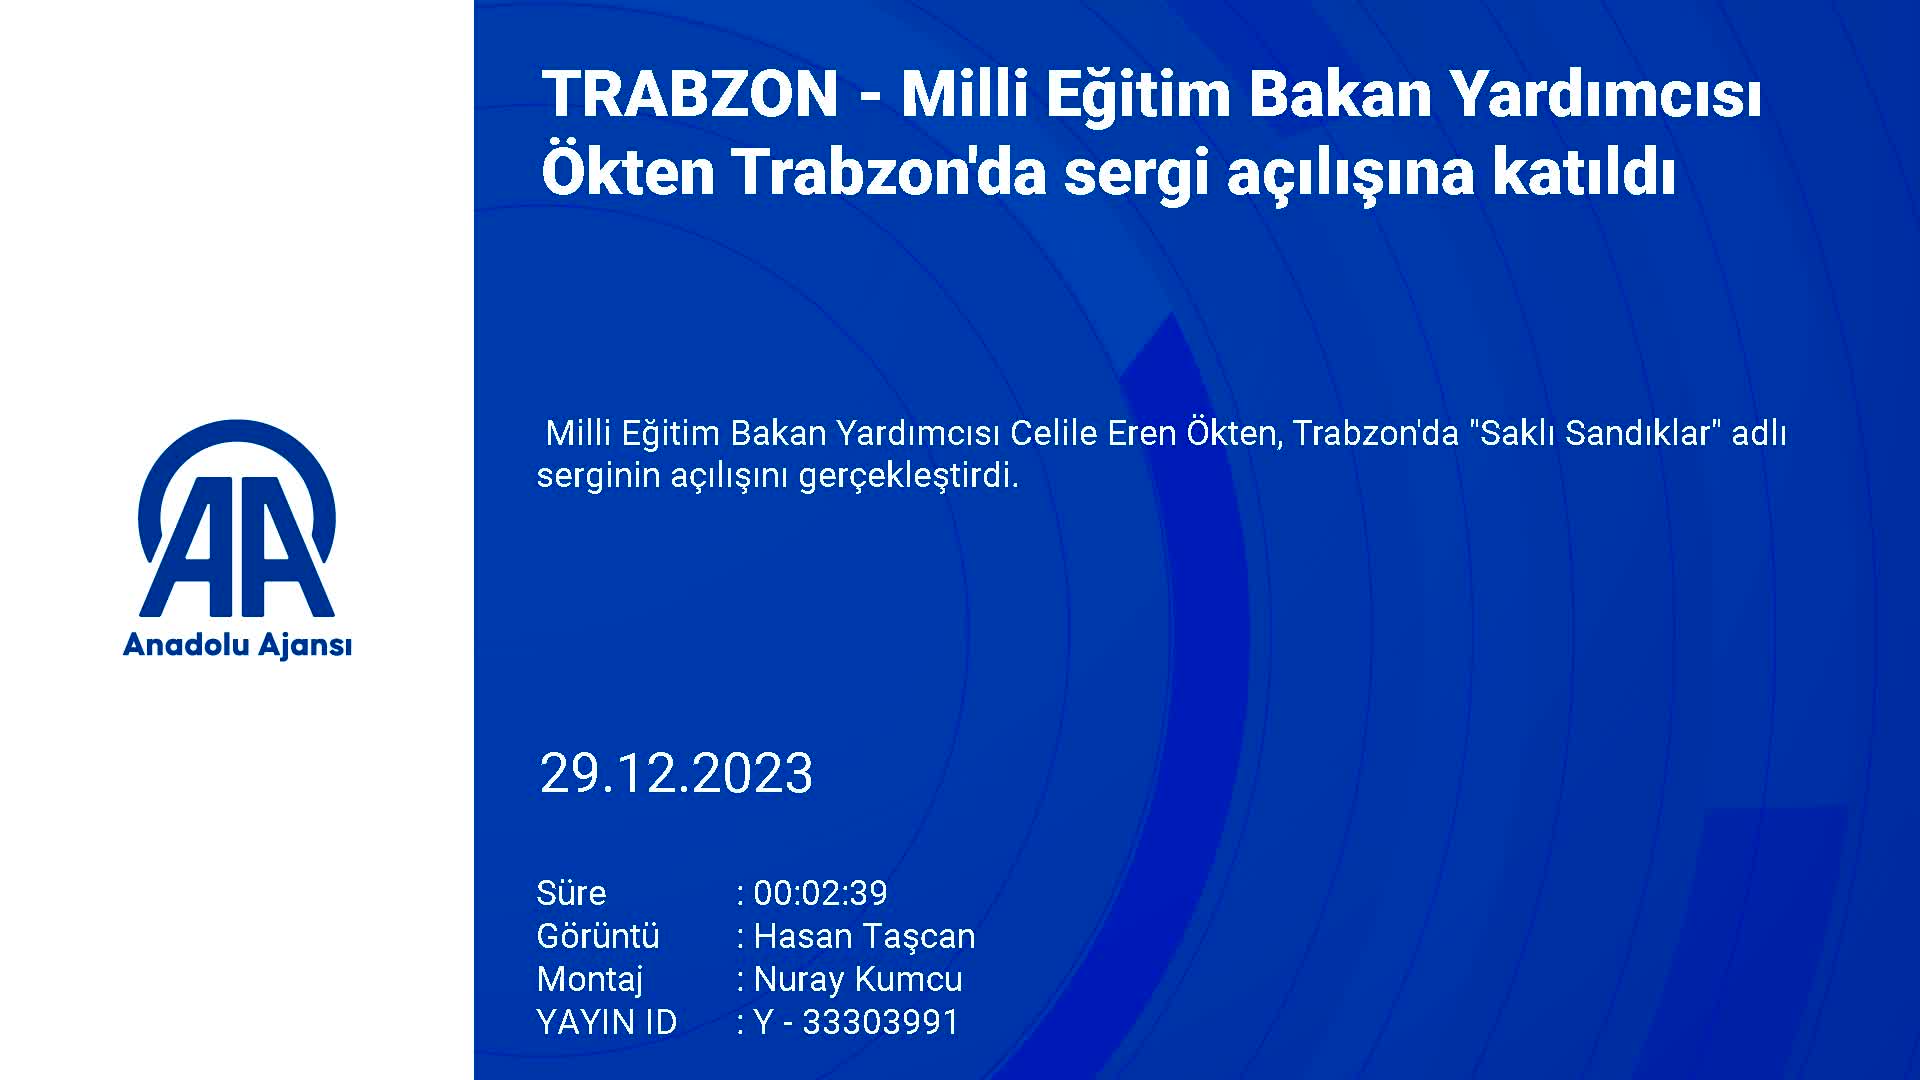 Milli Eğitim Bakan Yardımcısı Ökten Trabzon’da sergi açılışına katıldı